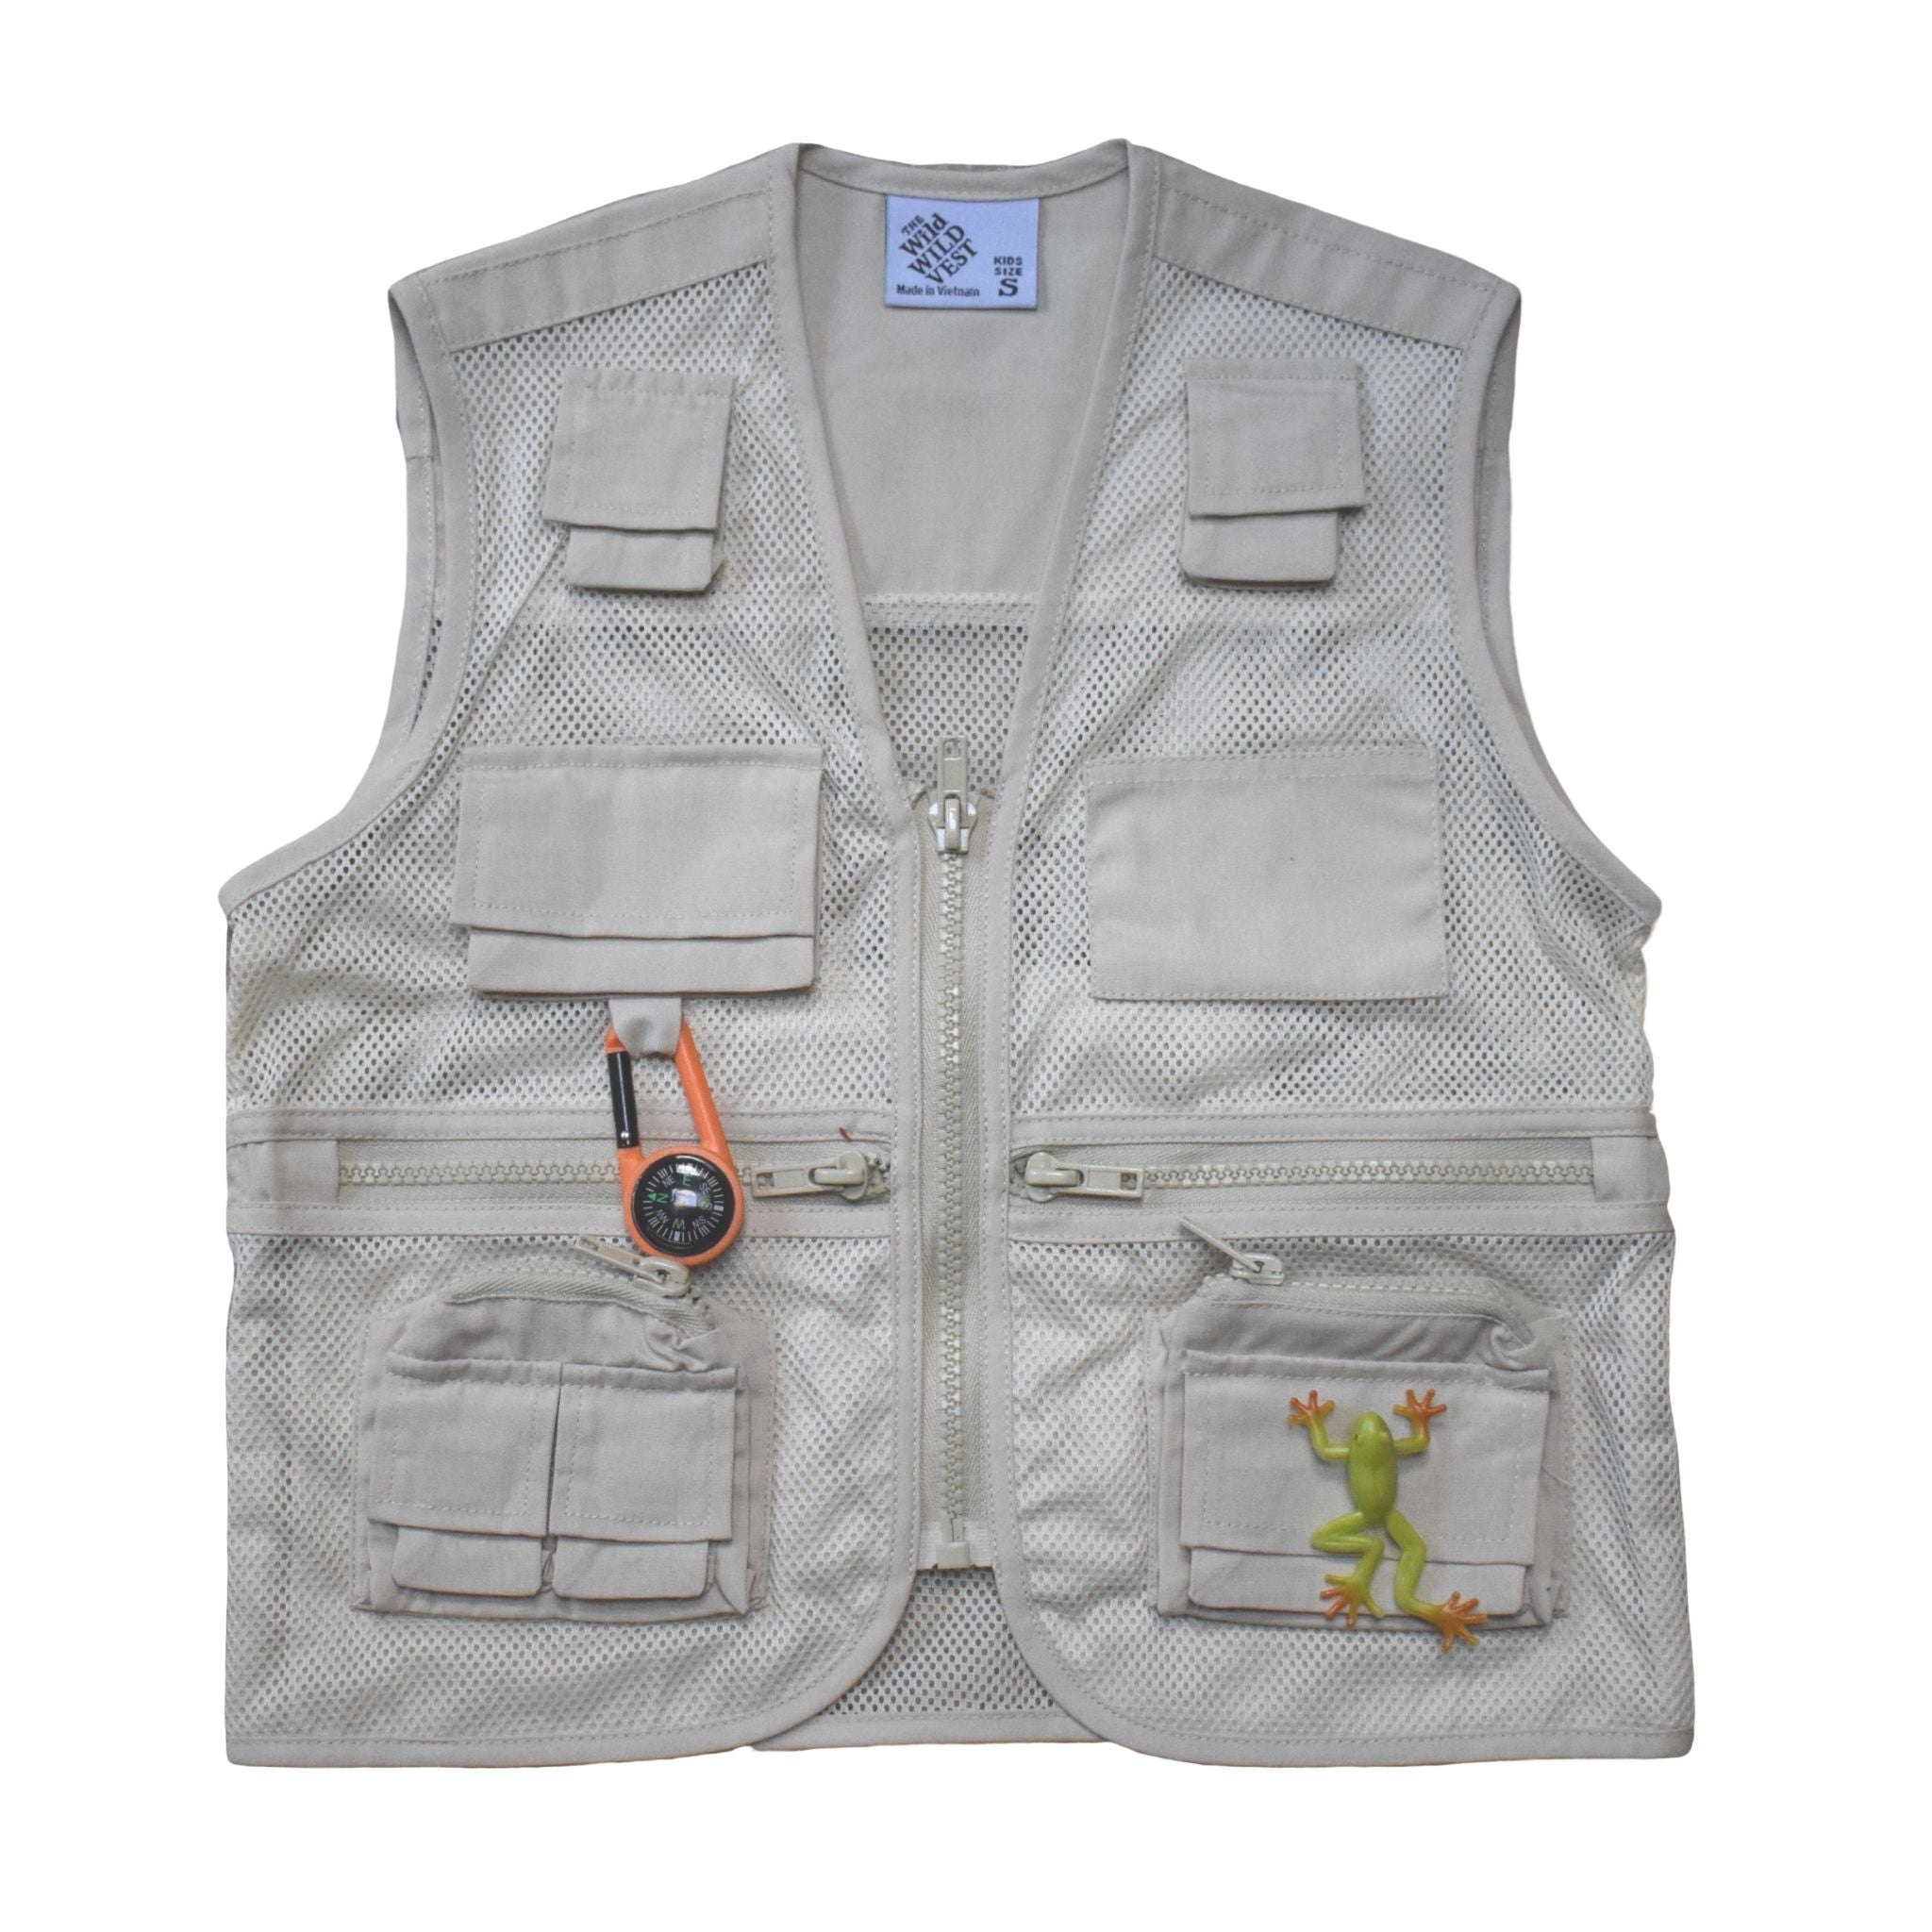 Jr Ranger Shop Adventure Vest - Khaki XL (Adult S)